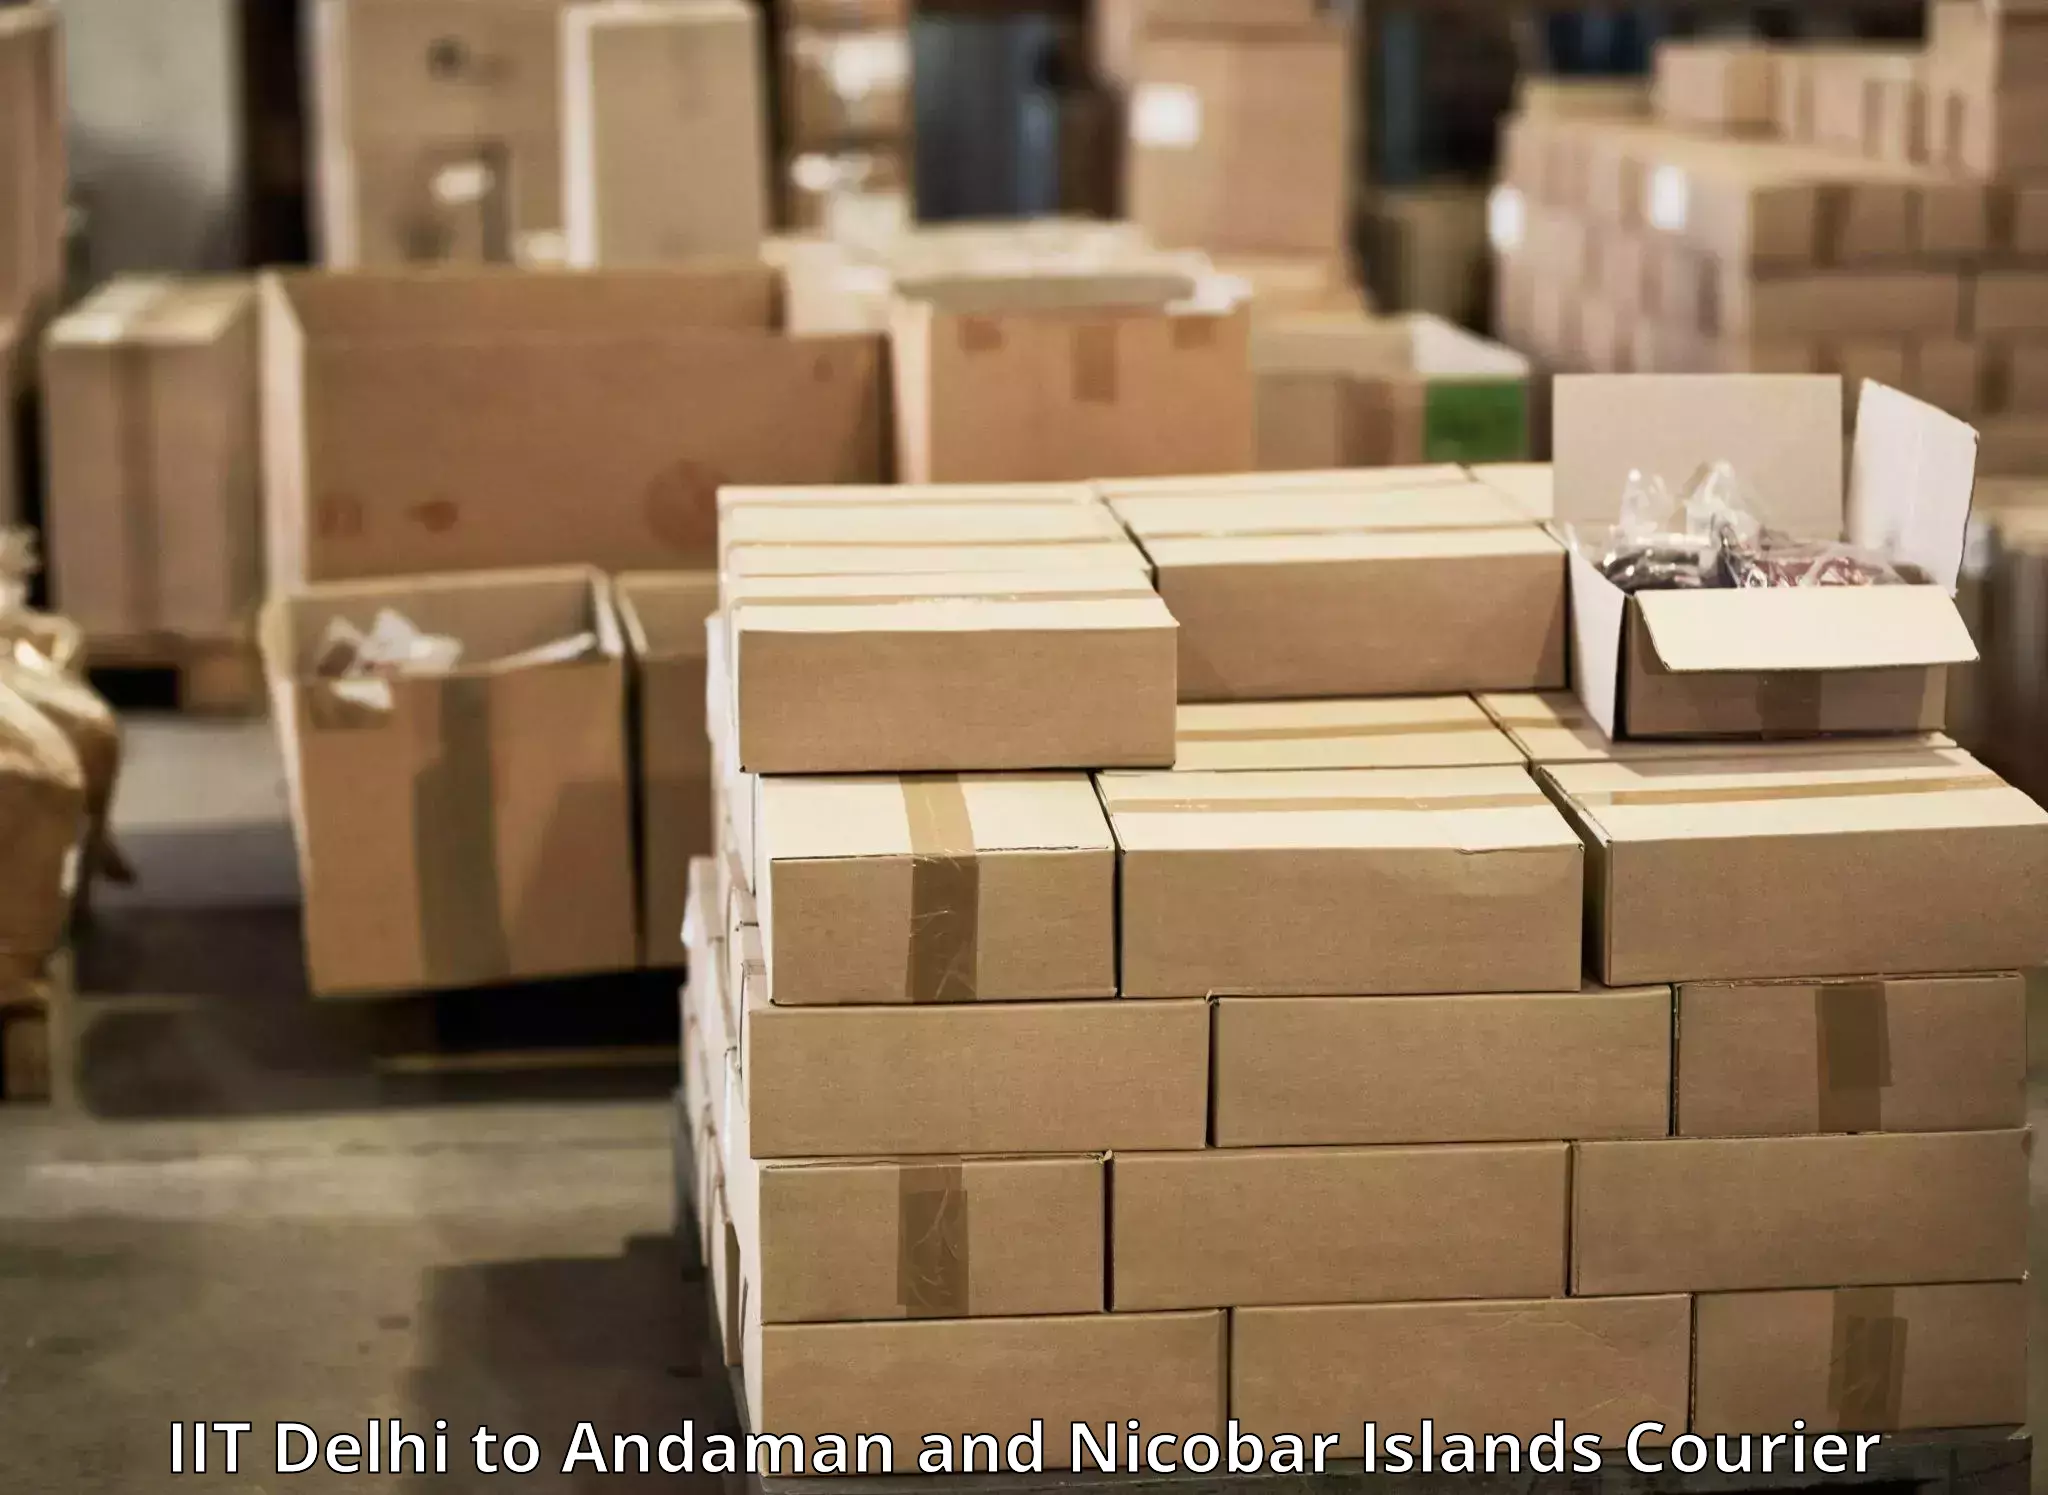 Door-to-door shipment in IIT Delhi to Andaman and Nicobar Islands